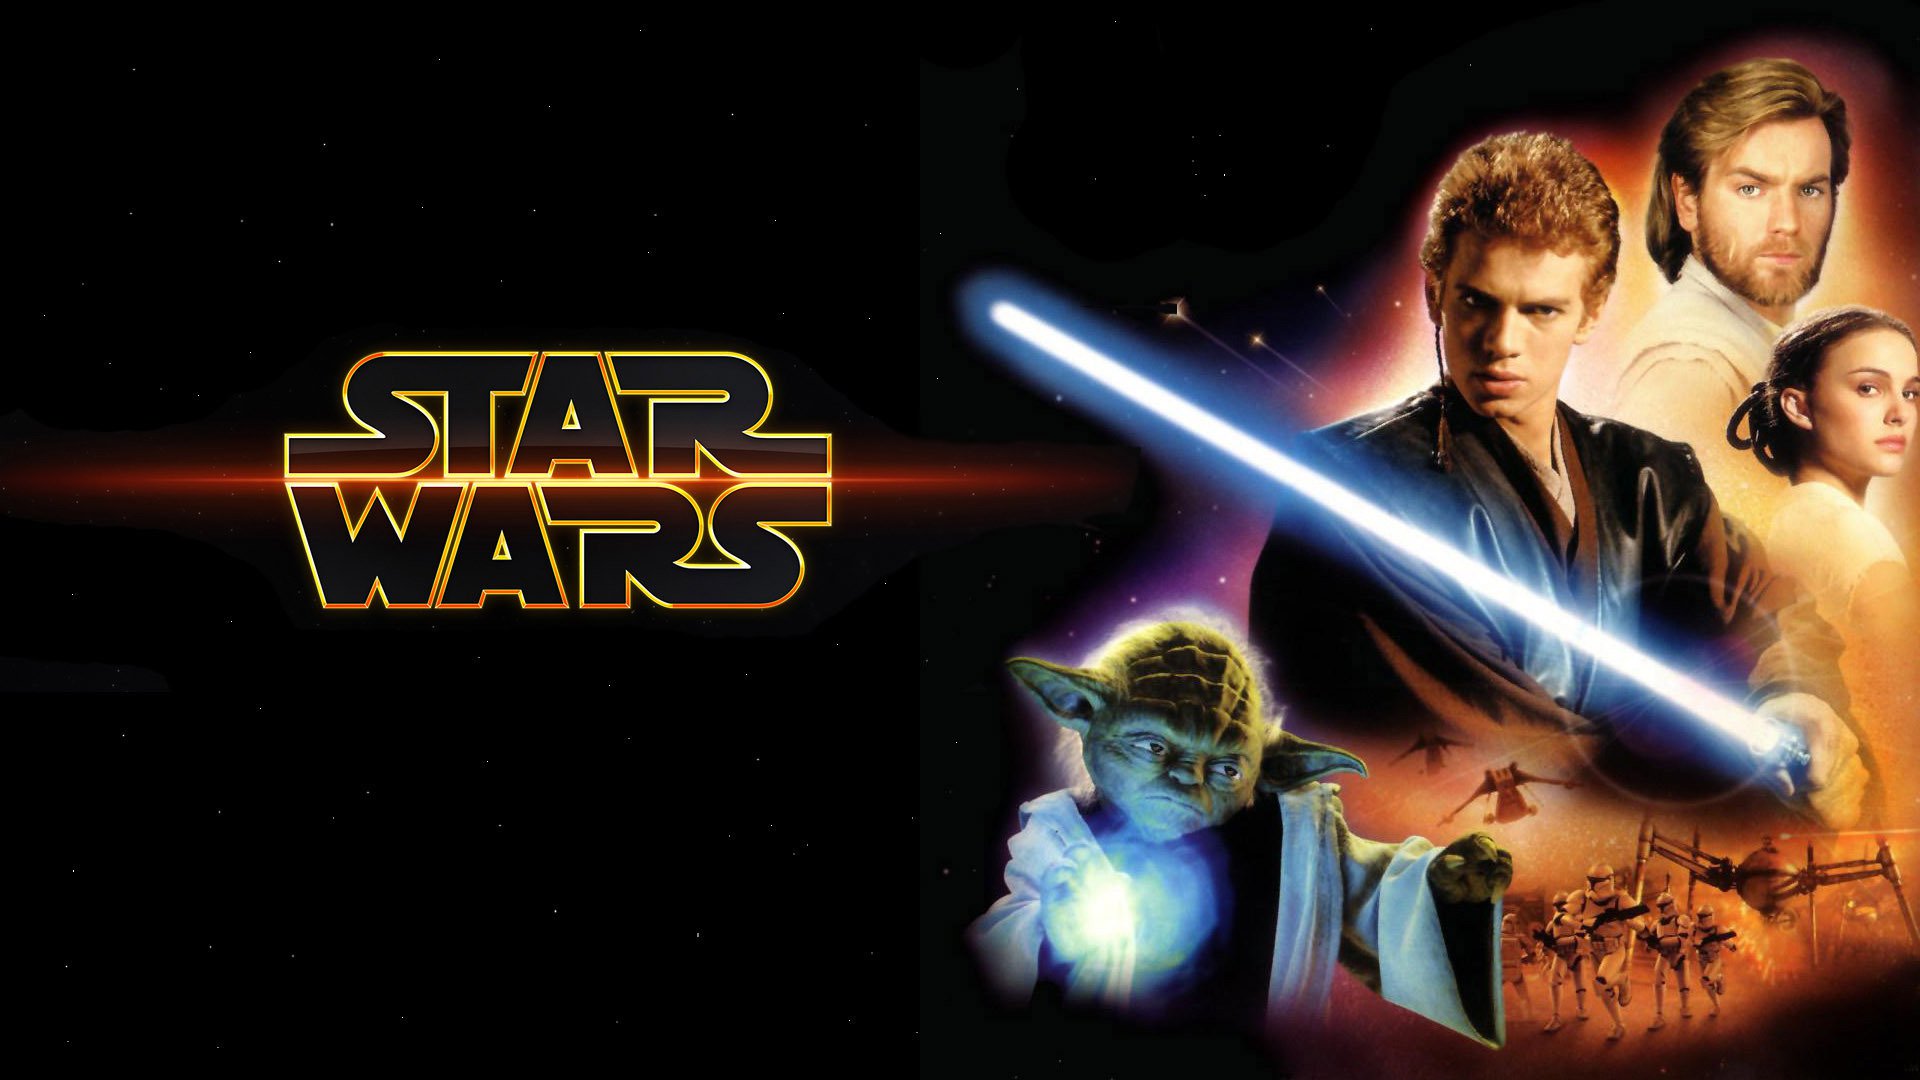 Yoda Anakin Skywalker Padme Amidala Obi Wan Kenobi Lightsaber Jedi 1920x1080